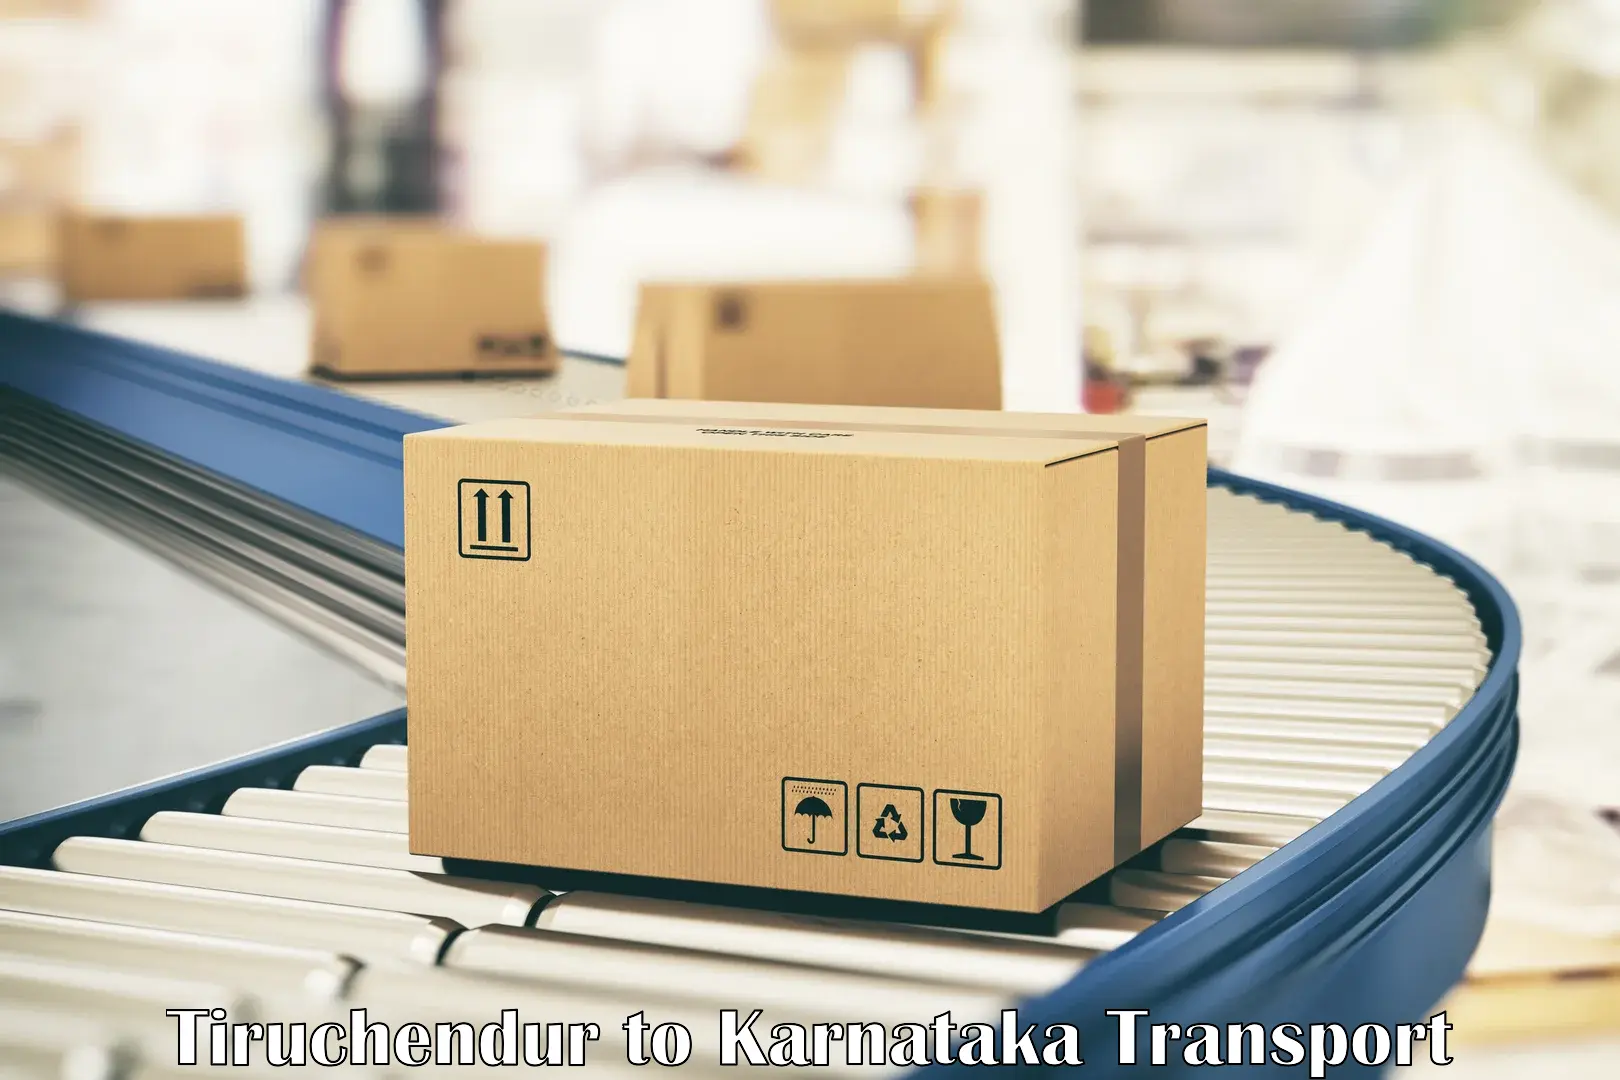 Daily parcel service transport in Tiruchendur to Hosanagar